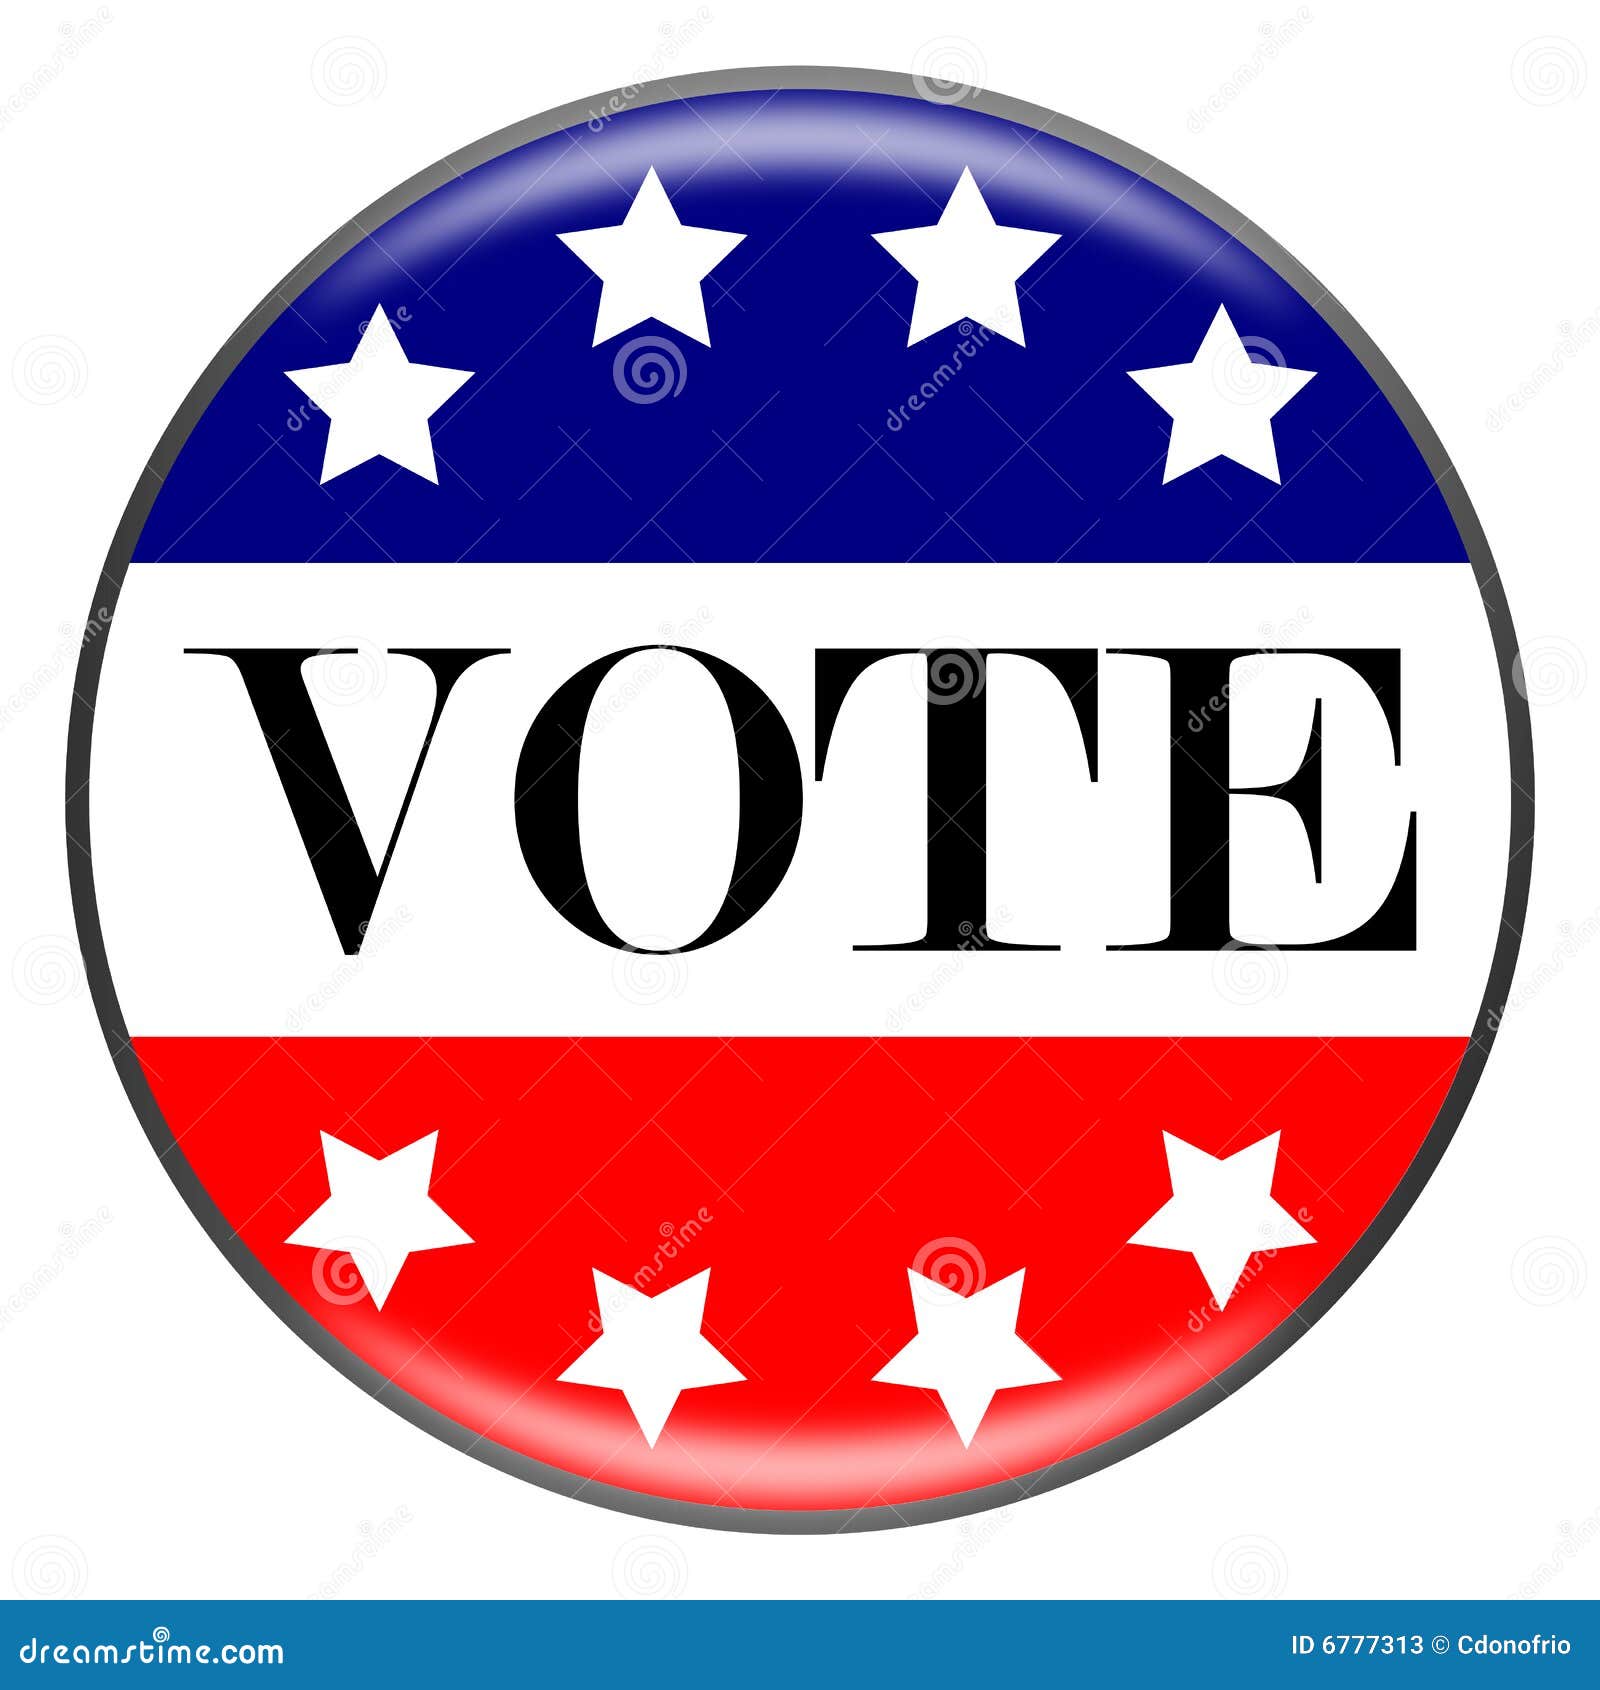 vote button clipart - photo #7